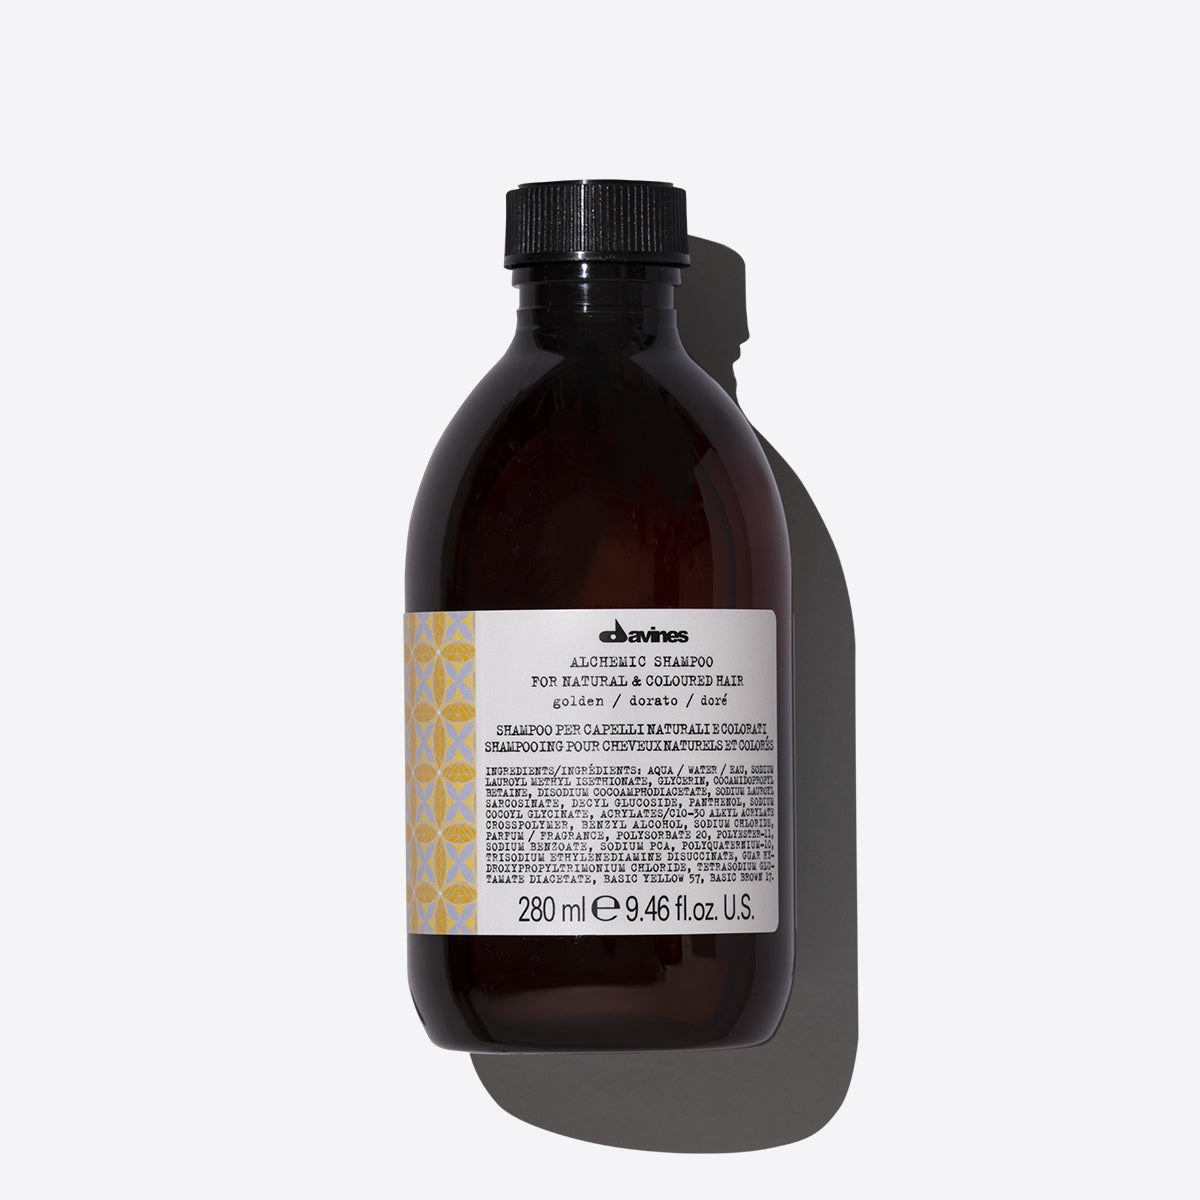 ALCHEMIC Shampoo Golden 1  Davines
